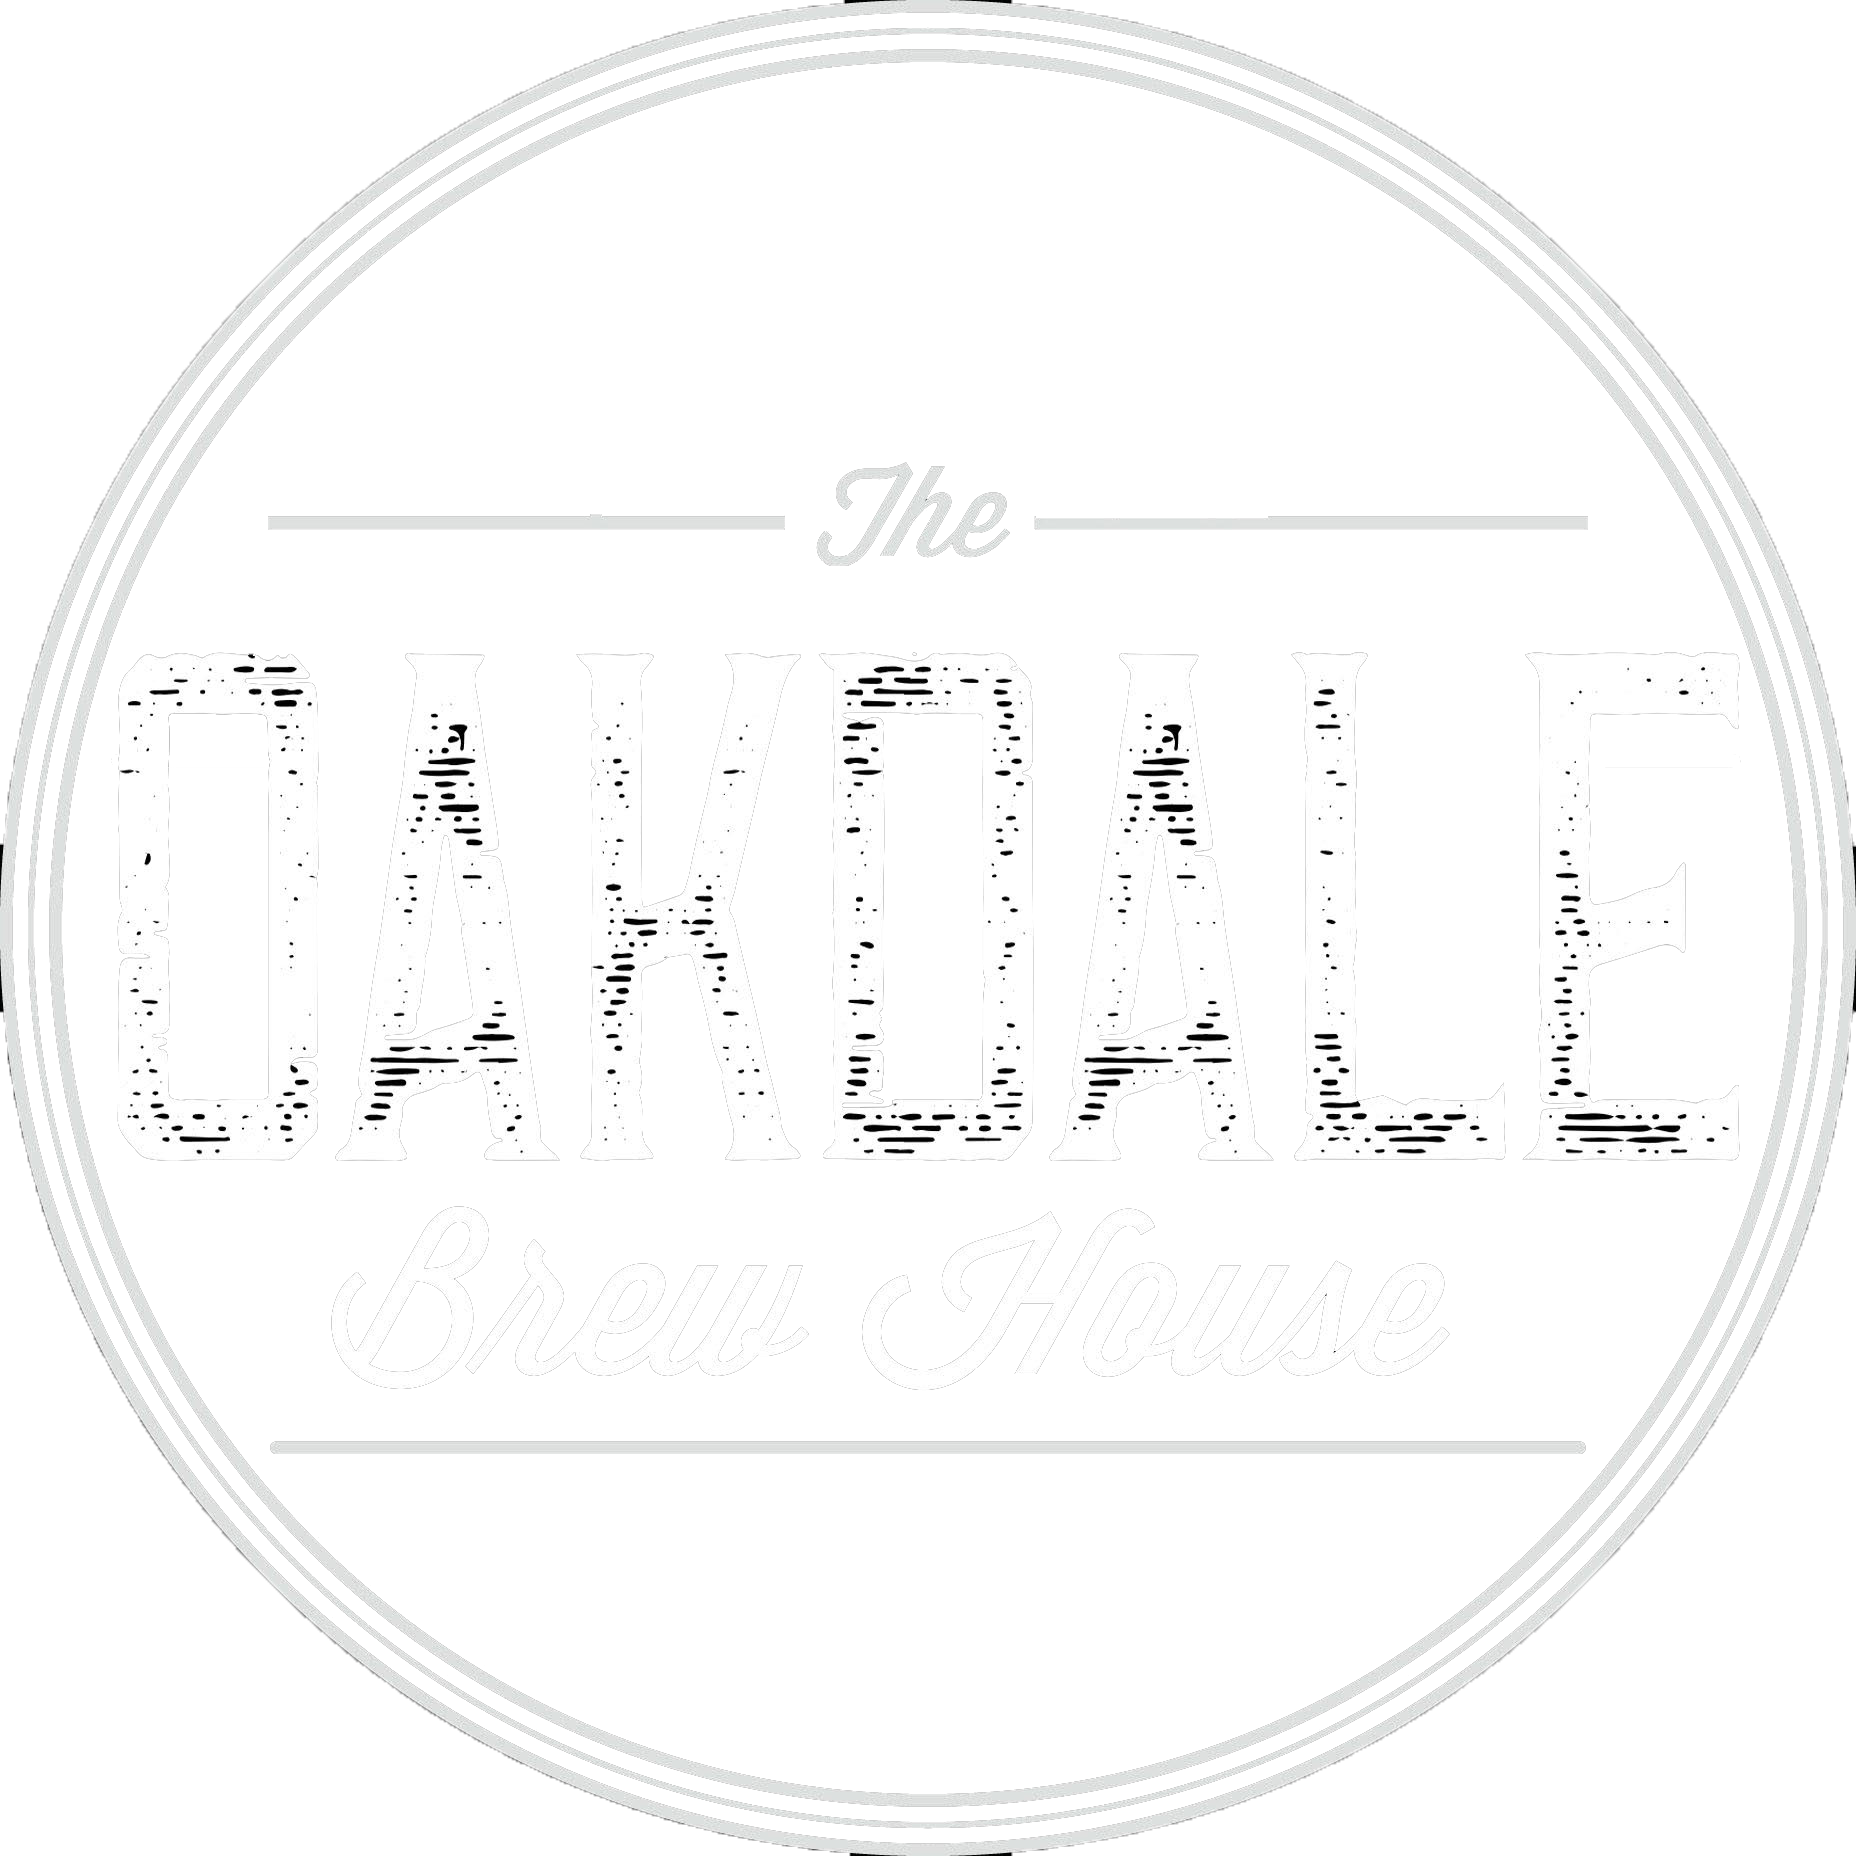 Oakdale Brew House